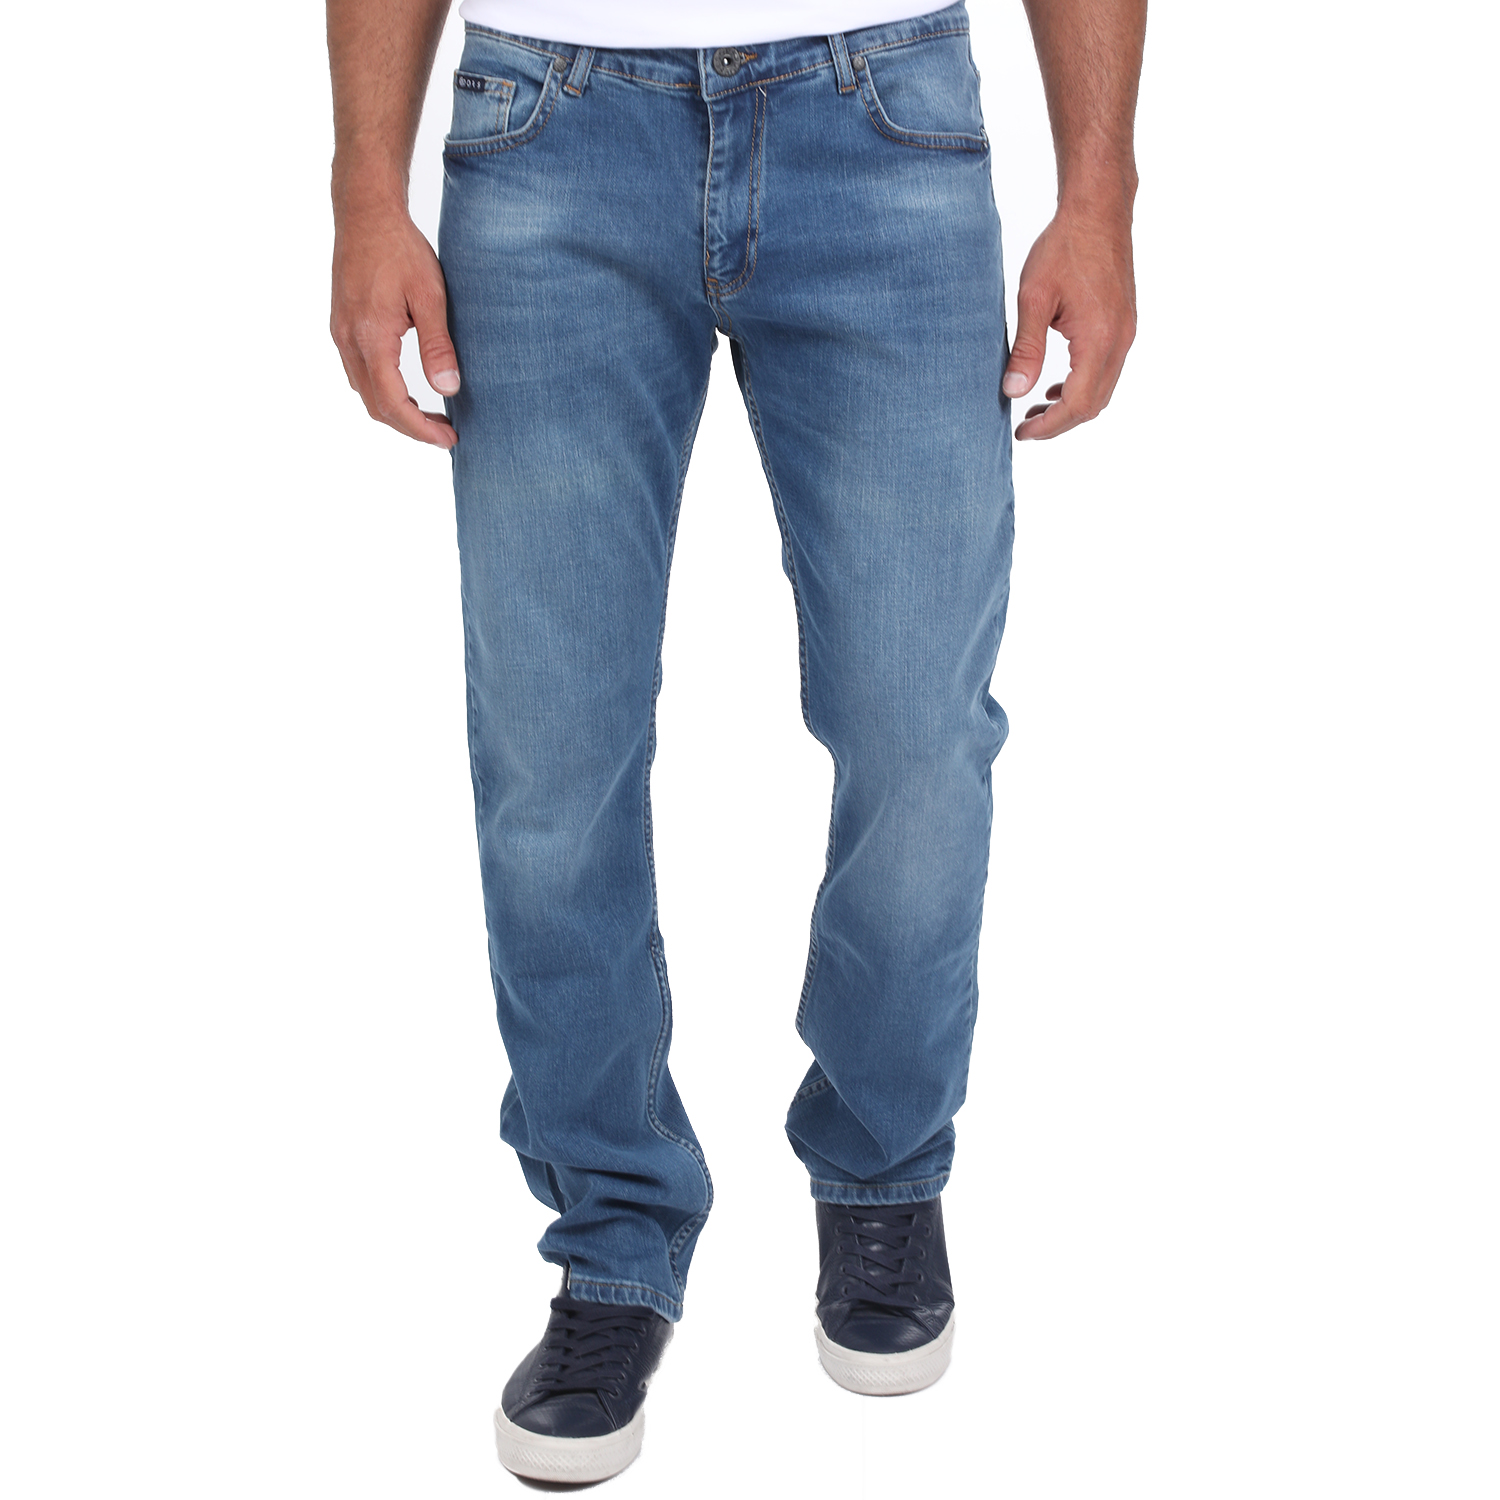 Ανδρικά/Ρούχα/Τζίν/Straight DORS - Ανδρικό τζιν παντελόνι DORS μπλε